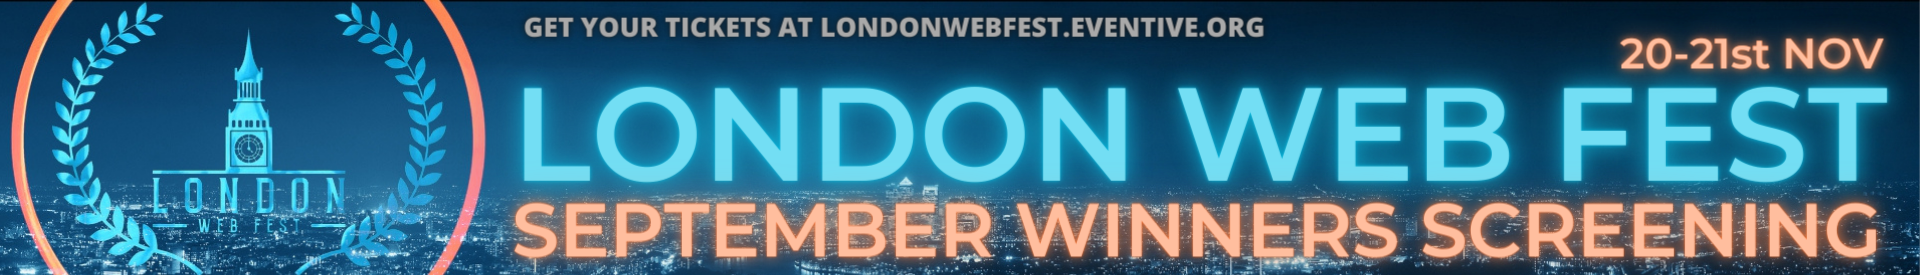 London Web Fest